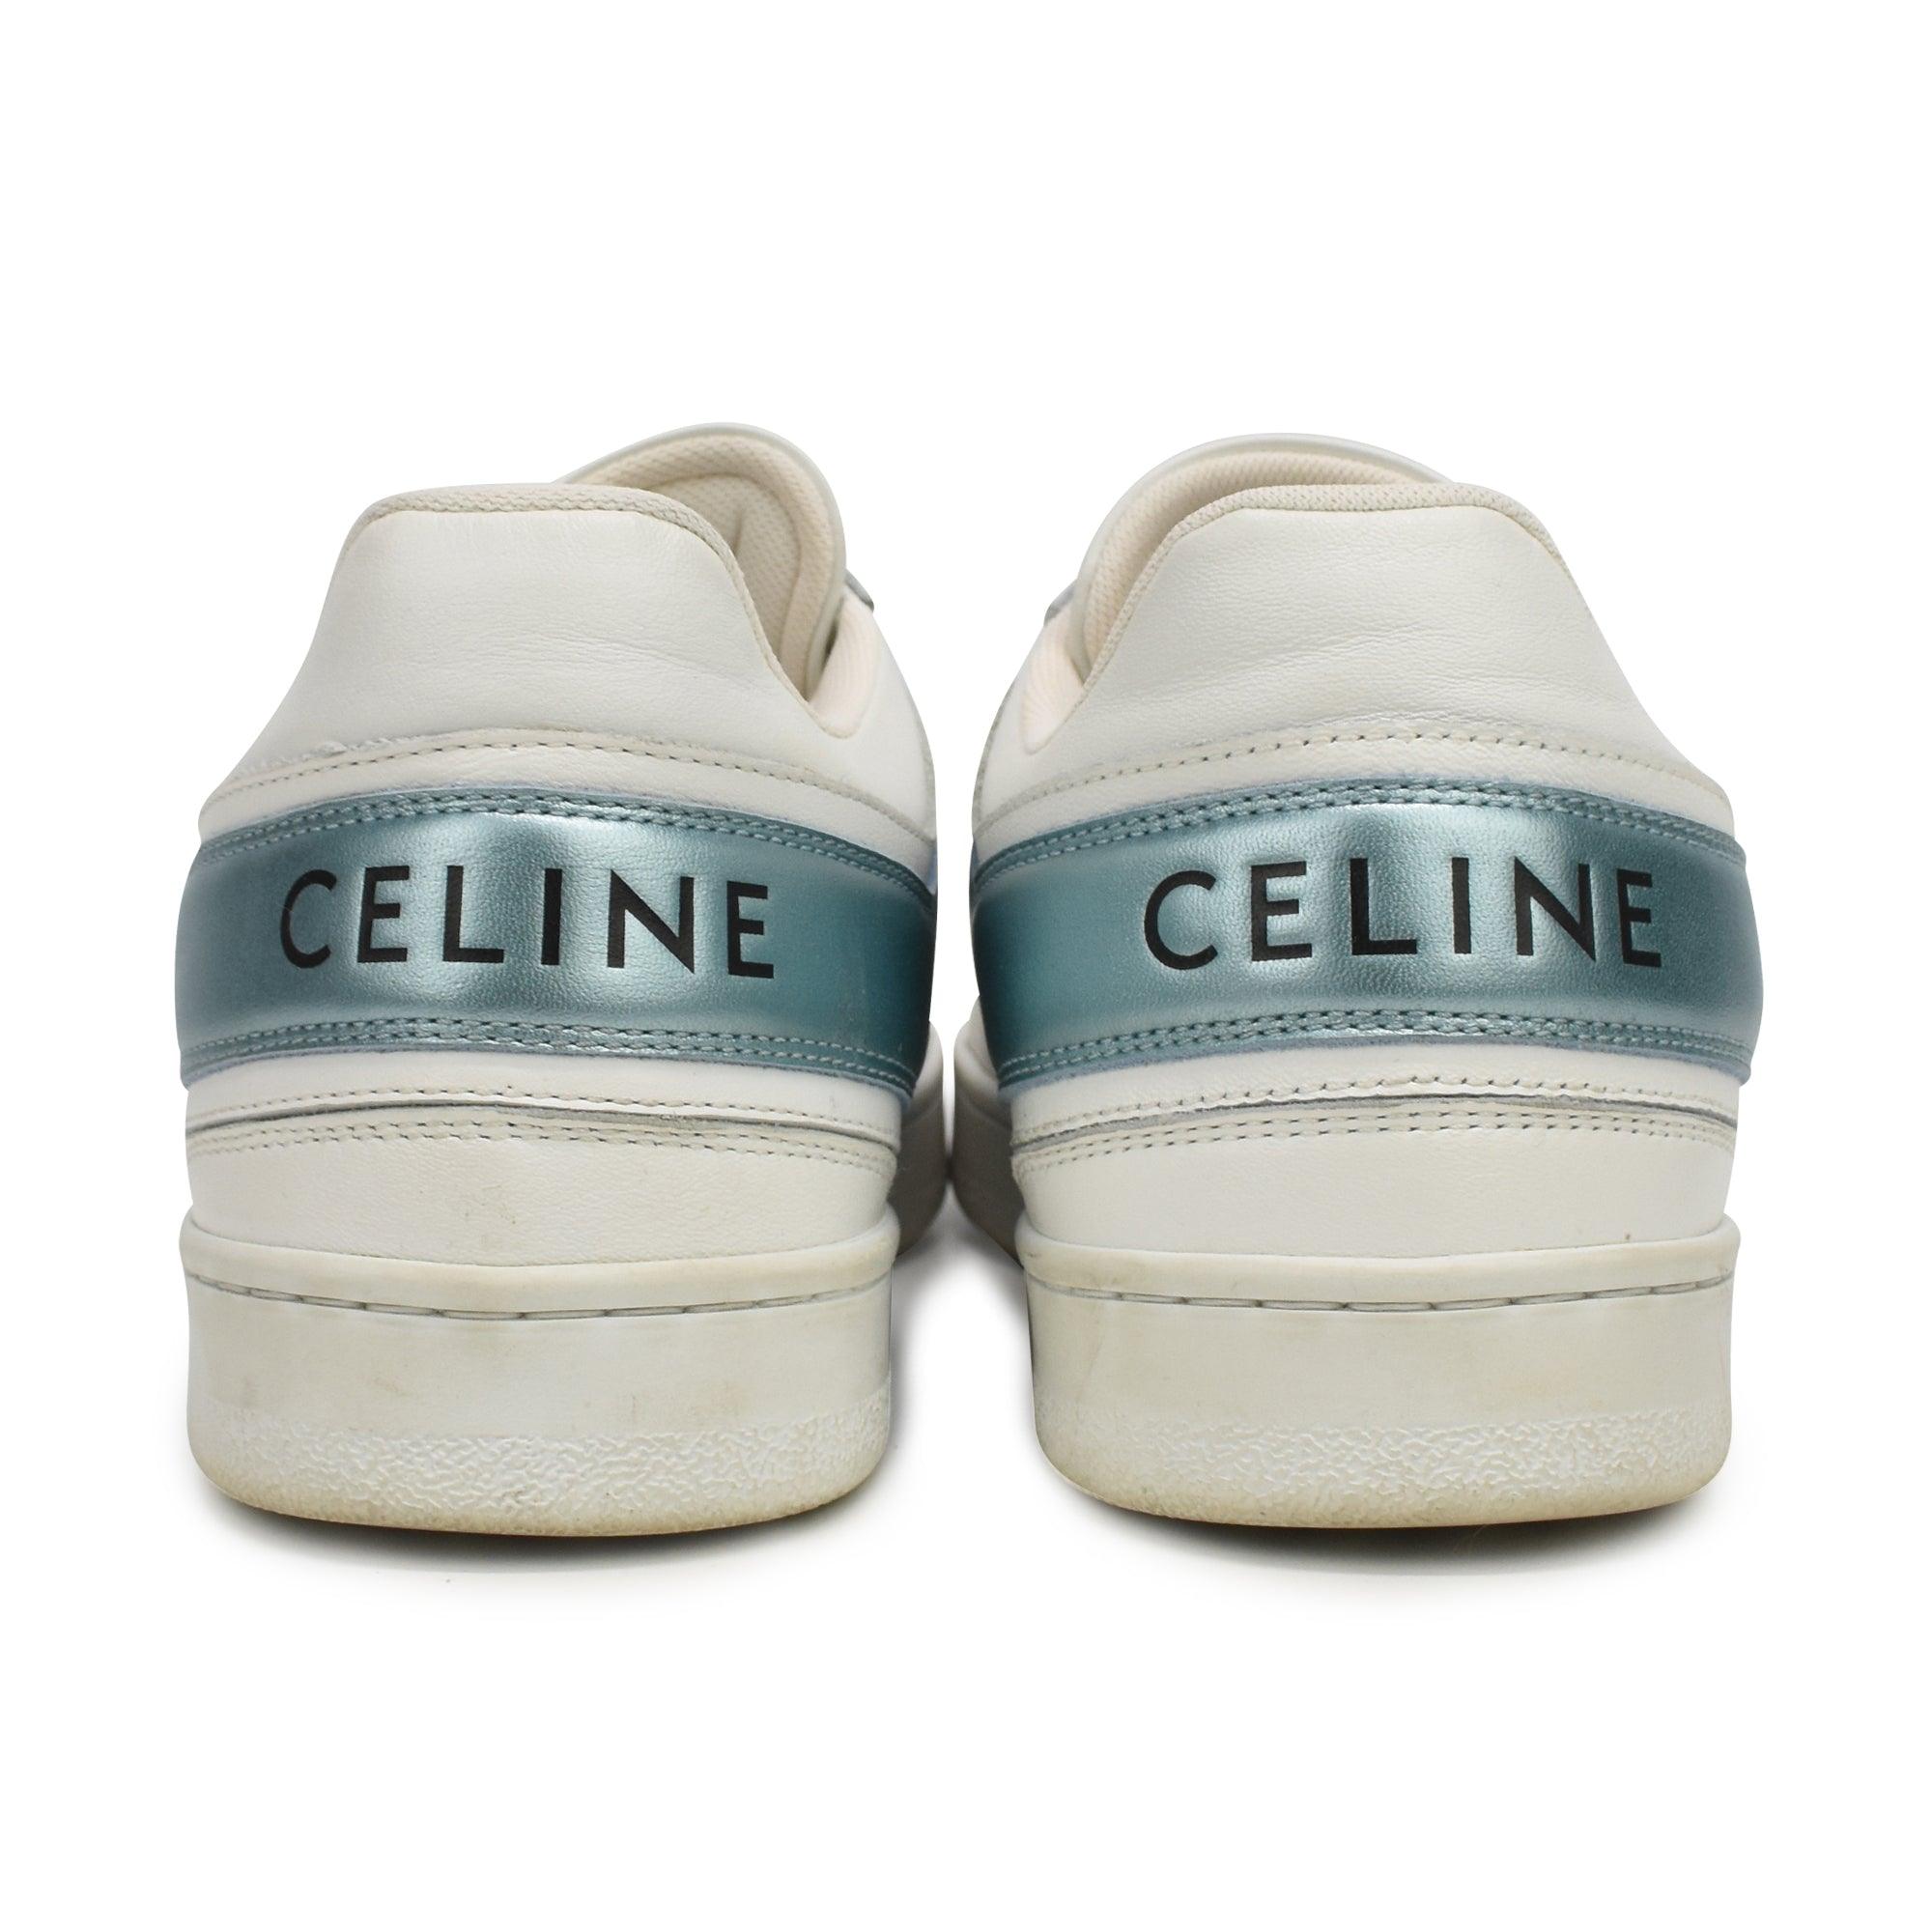 Celine Sneakers - Women's 37 - Fashionably Yours